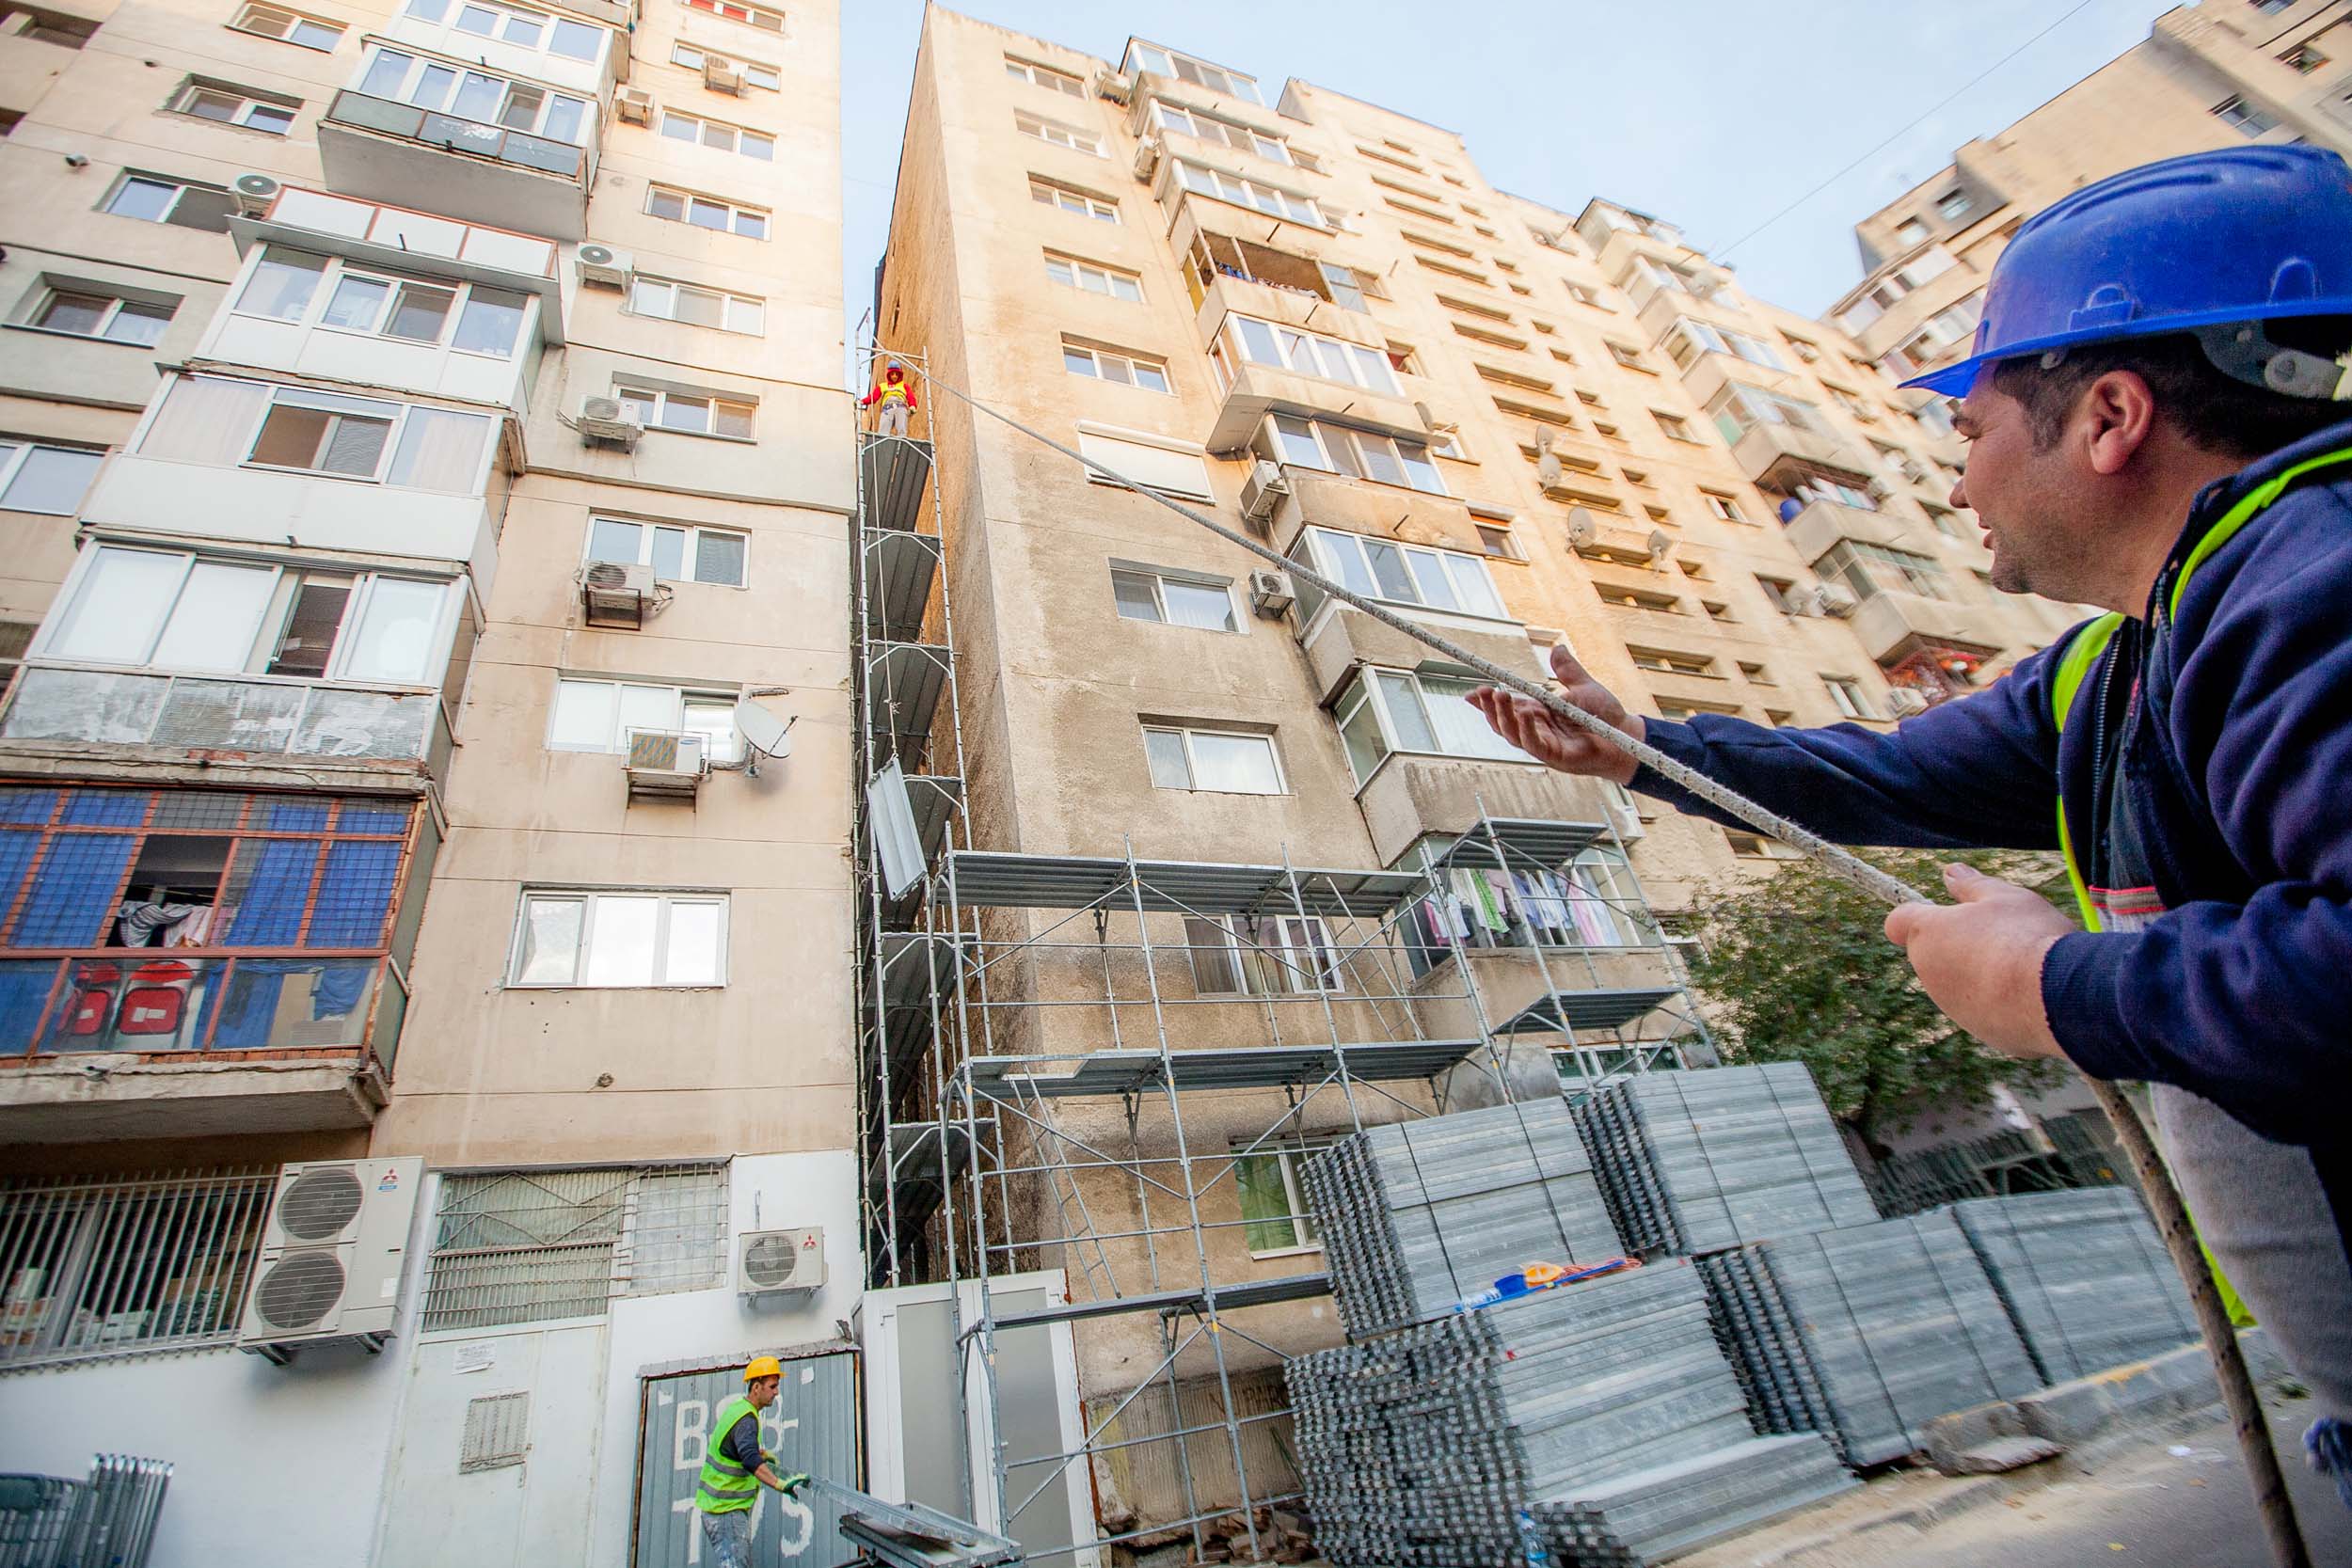 Blocurile de locuințe din Ploiești se reabilitează termic. De ce nu și în Argeș?